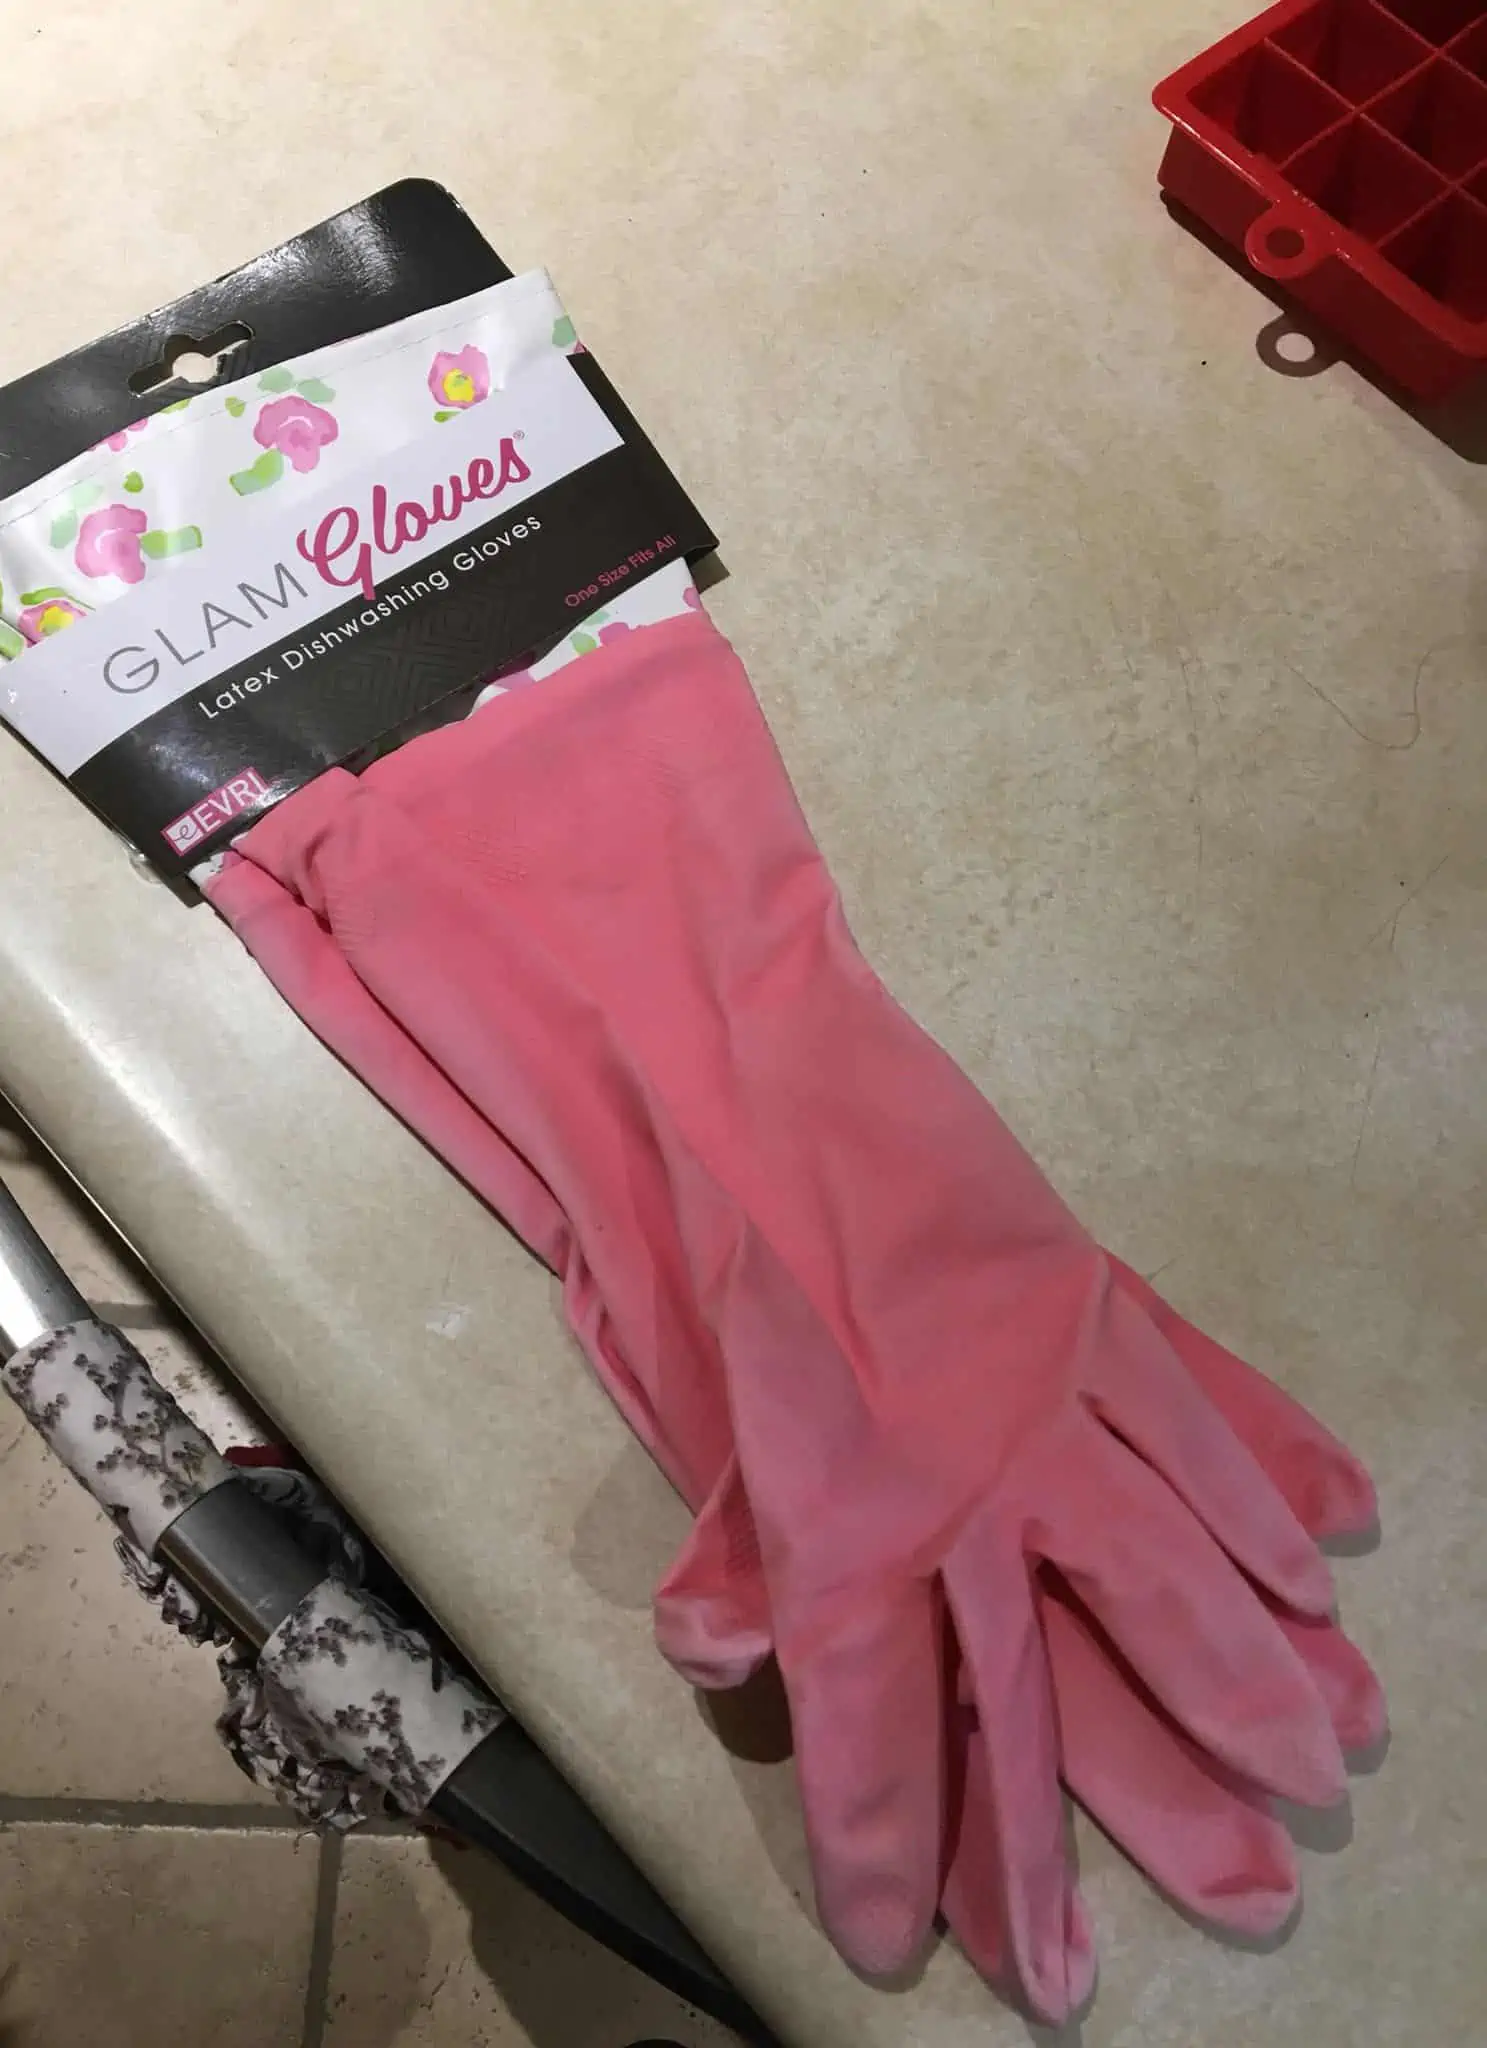 Pink kitchen gloves.